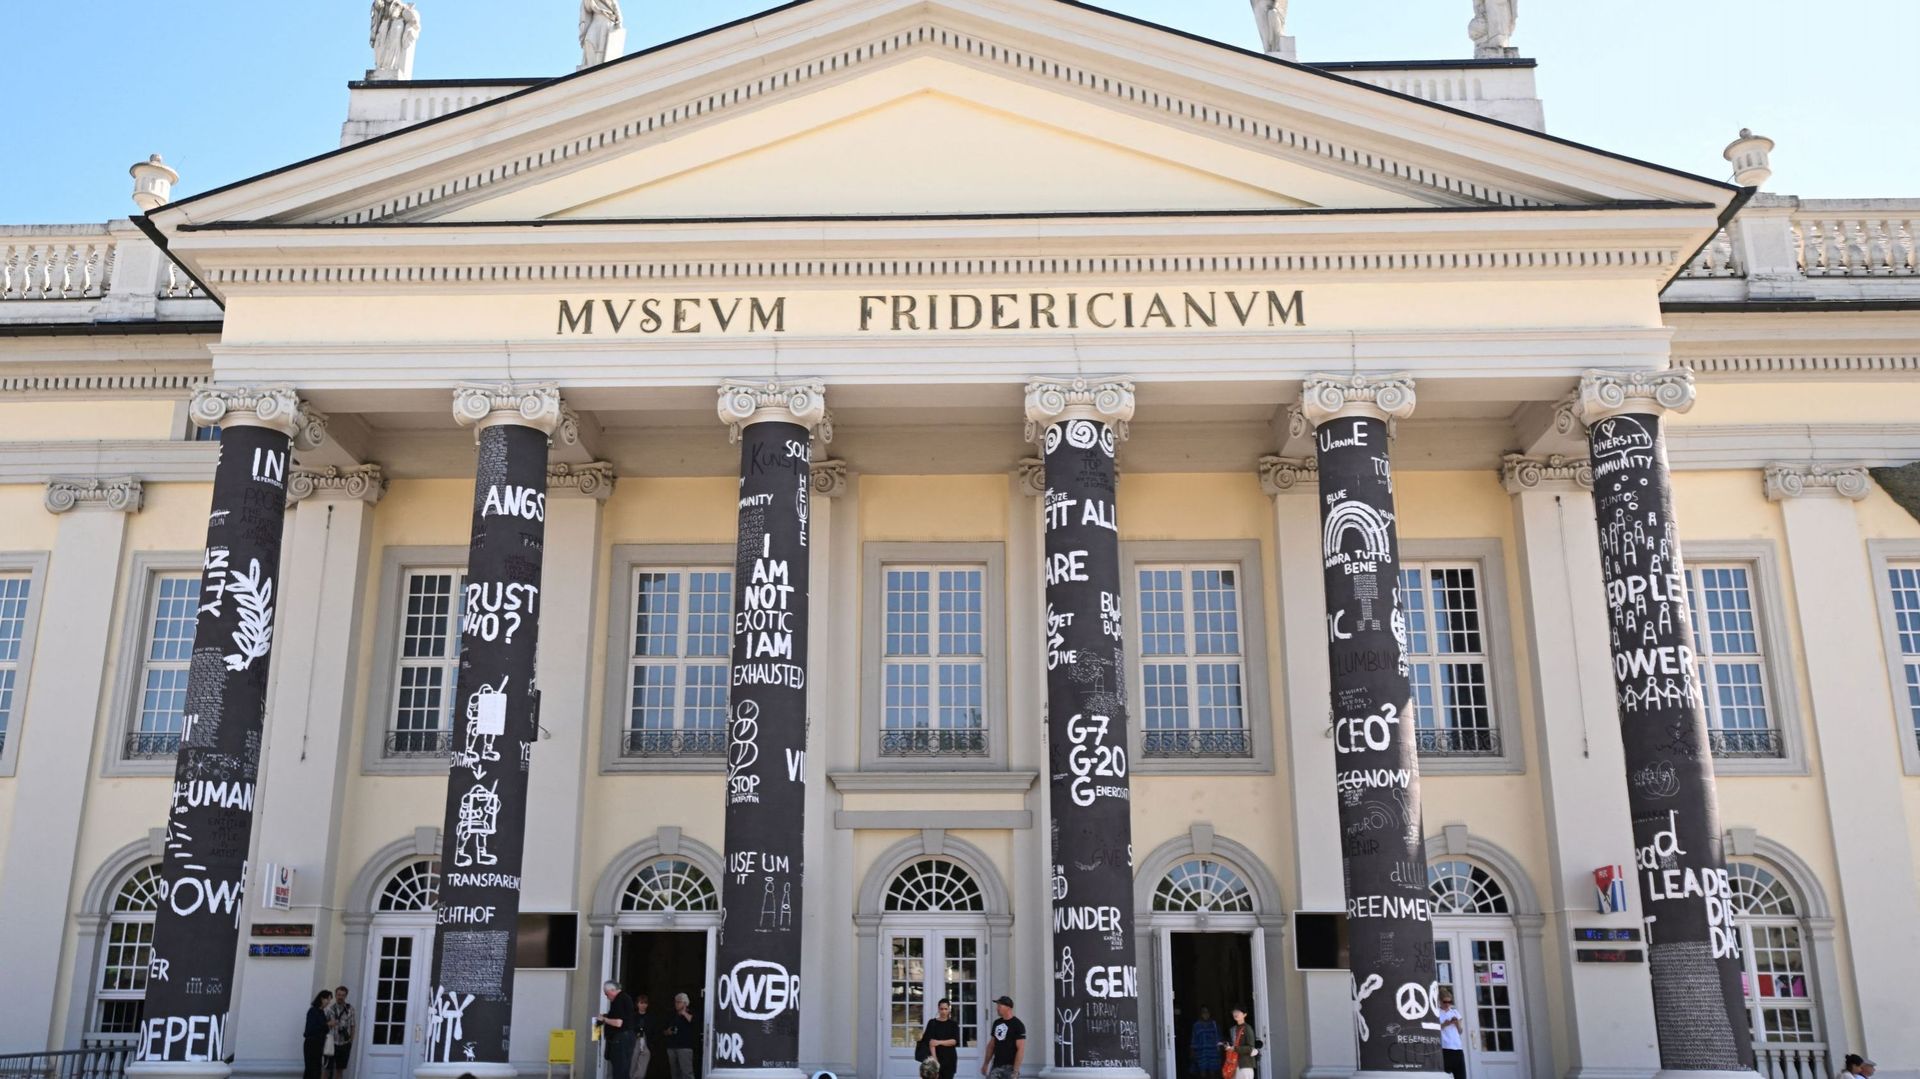 Les colonnes peintes en noir avec des dessins de l’artiste roumain Dan Perjovschi au musée Fridericianum, un des lieux de l’exposition d’art contemporain Documenta 15 à Cassel